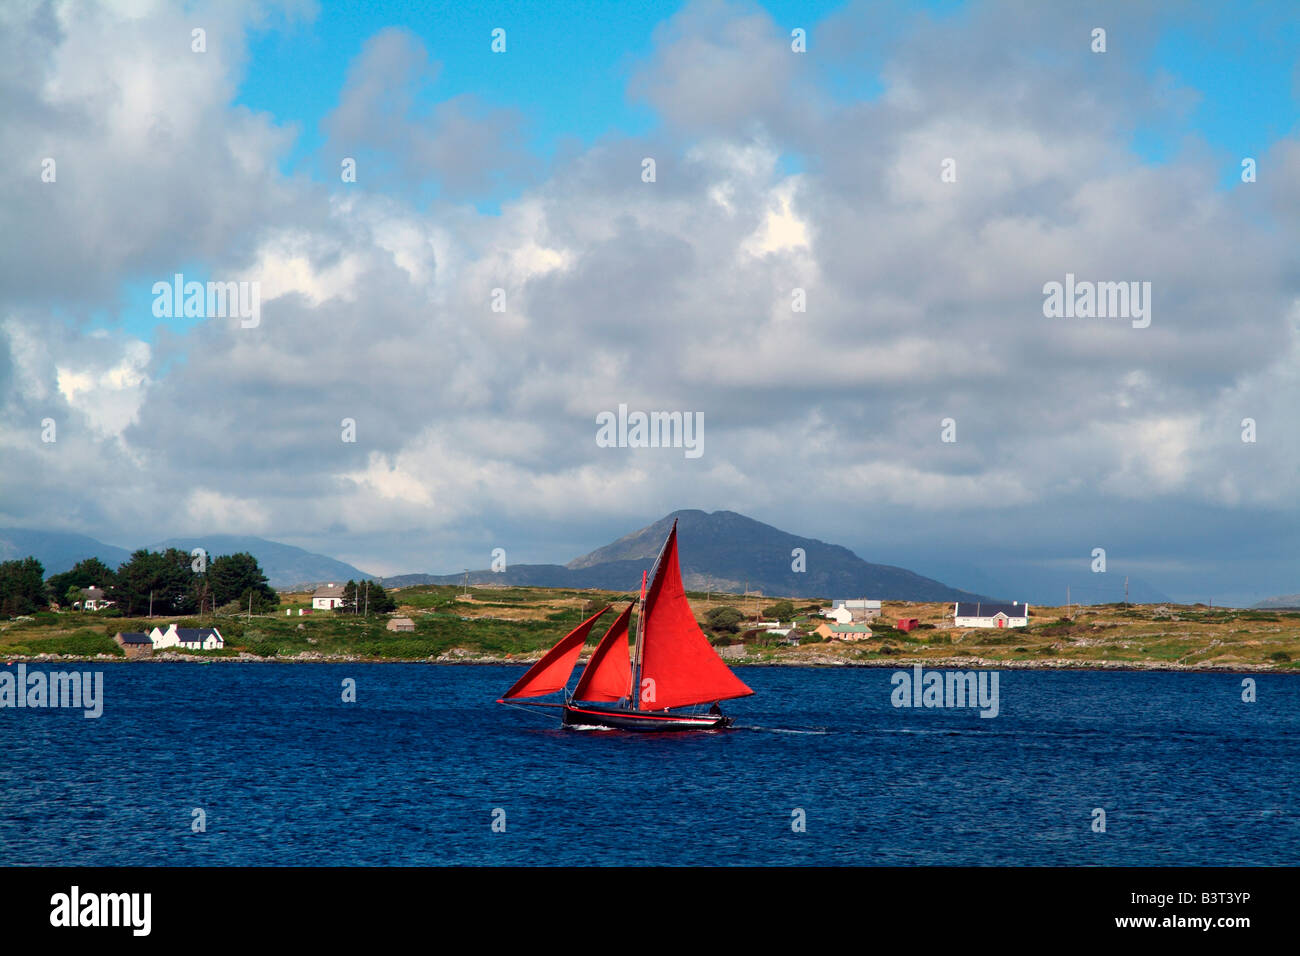 Sailboat on lake, Roundstone, Galway, Ireland Stock Photo